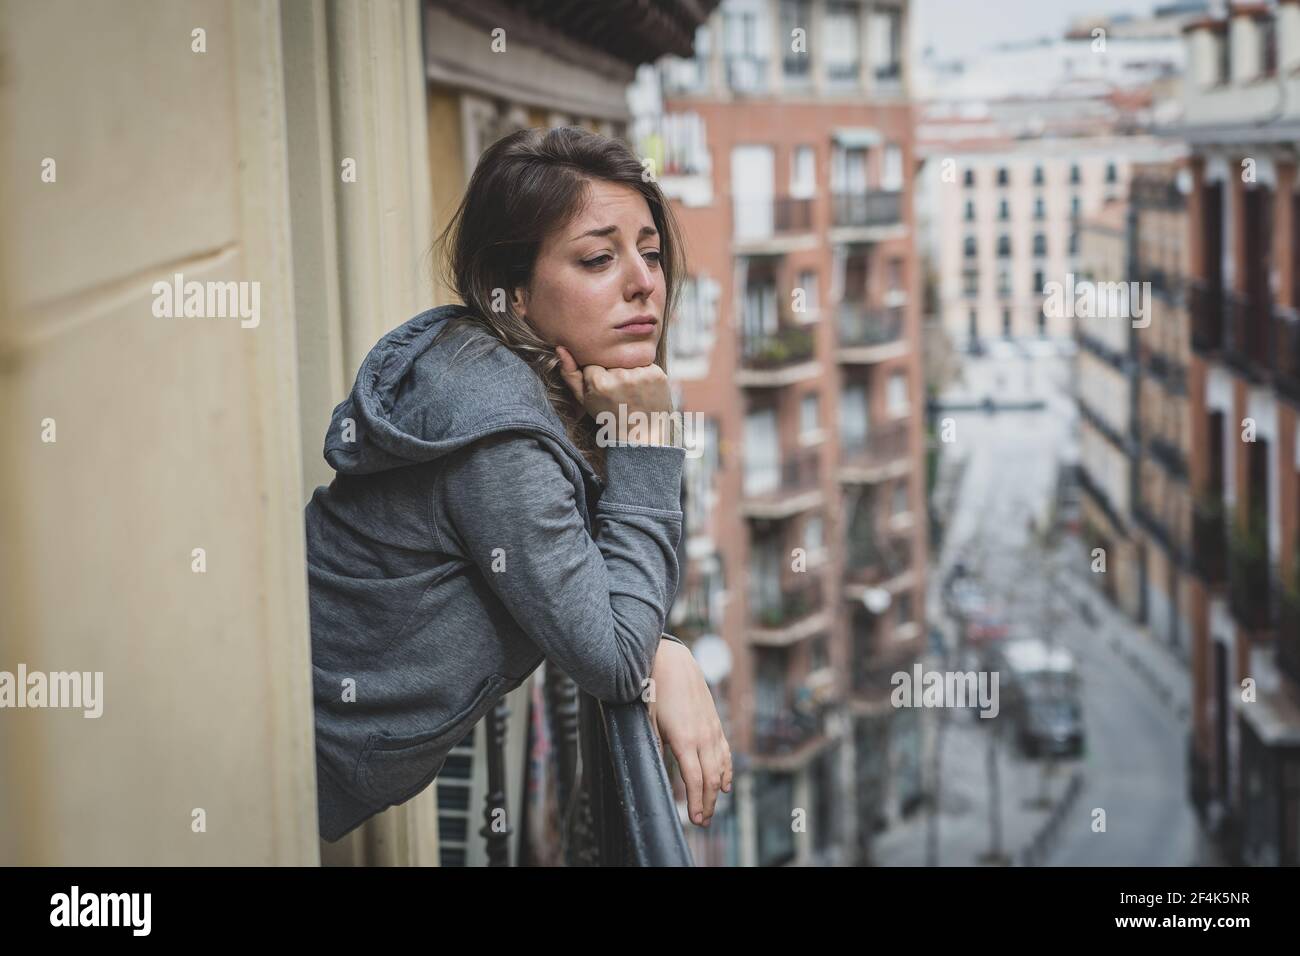 Junge kaukasische traurige und depressive Frau, die auf einem Balkon steht und sich gestresst und überwältigt fühlt. Weiblich leiden an Depressionen in der psychischen Gesundheit conc Stockfoto